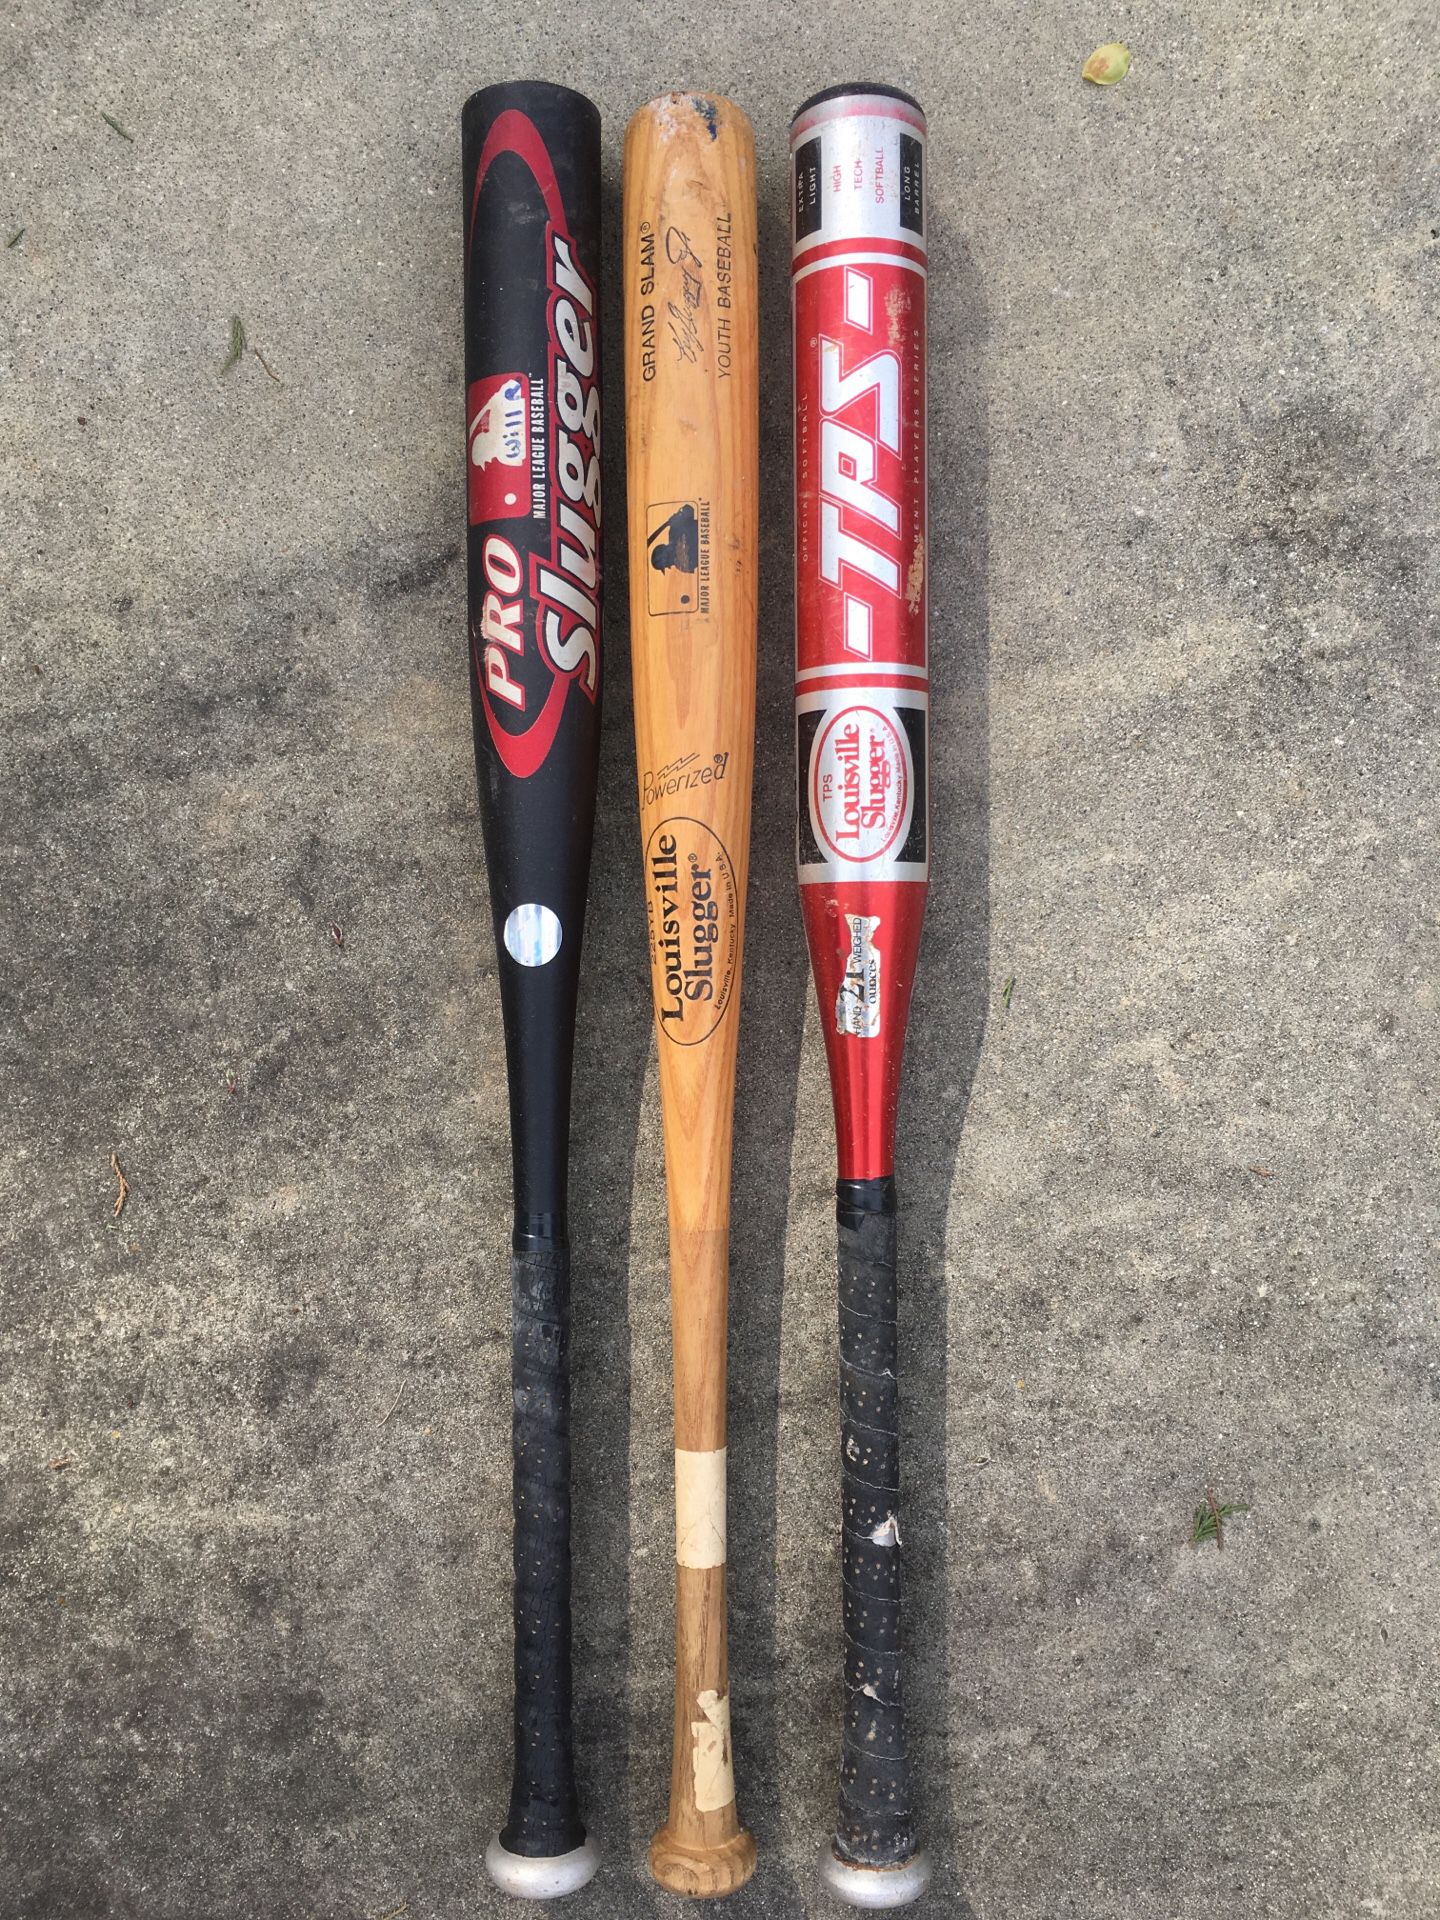 Louisville Slugger baseball bats